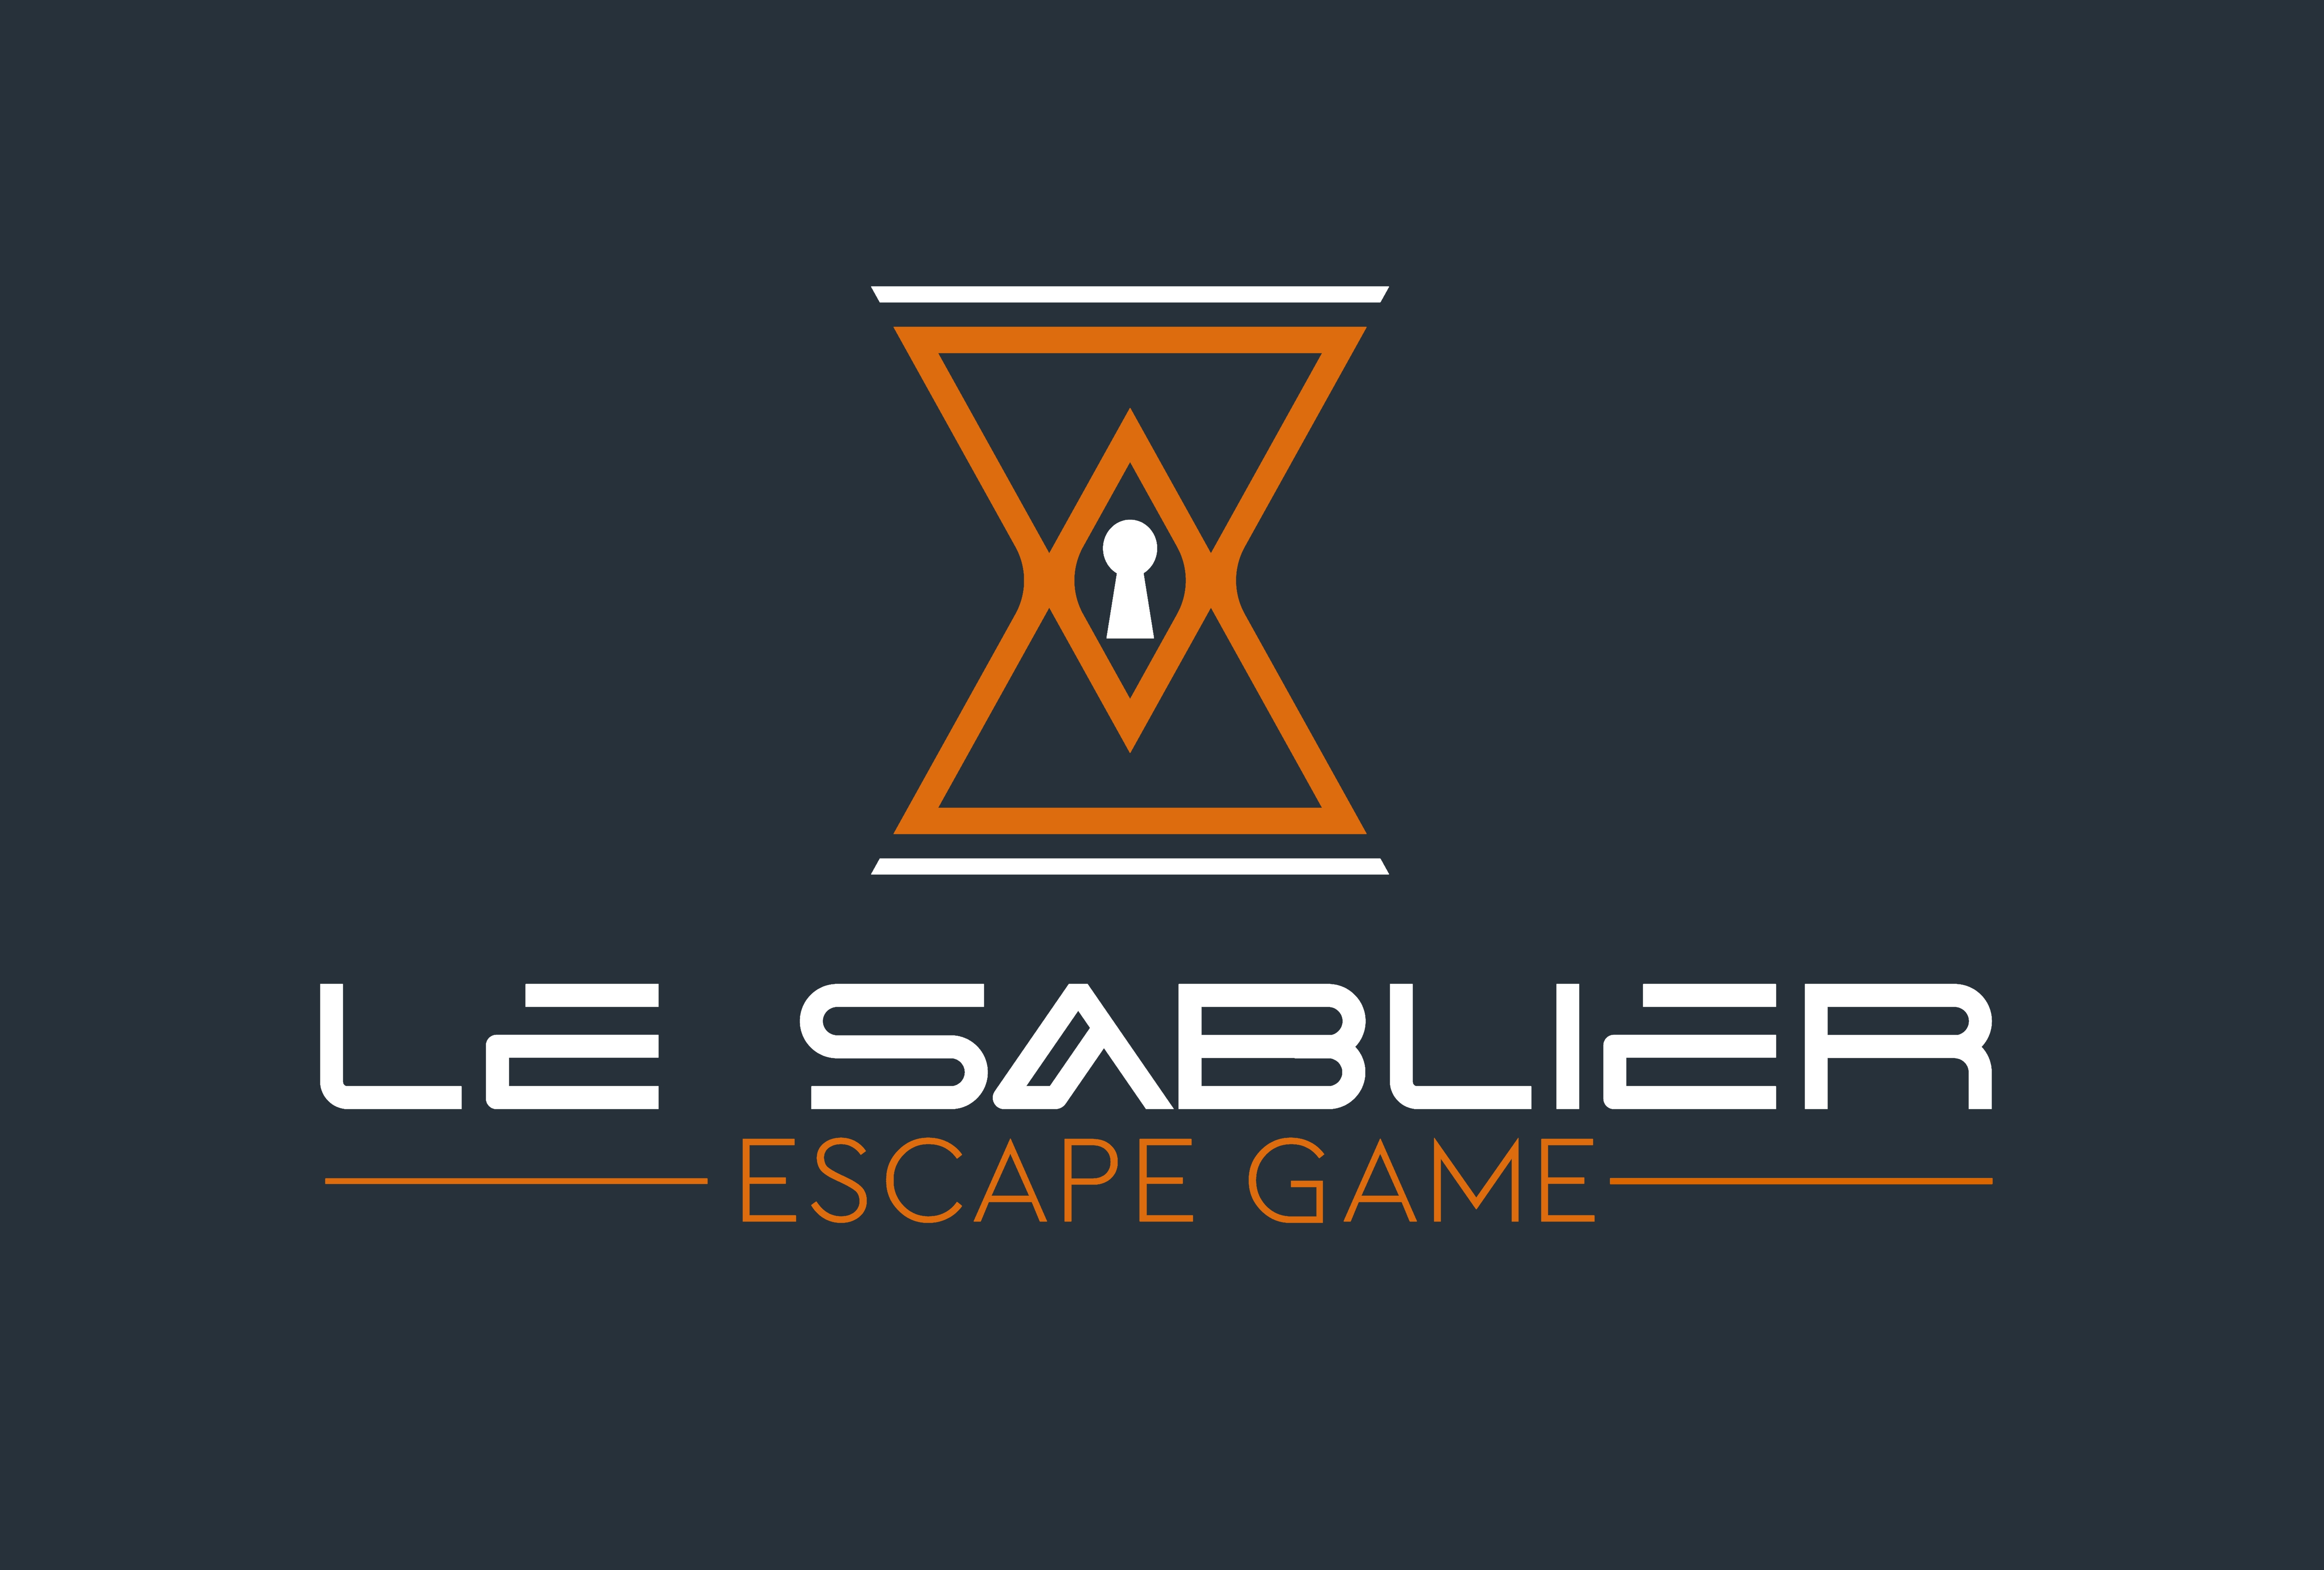 Le SABLIER Escape game